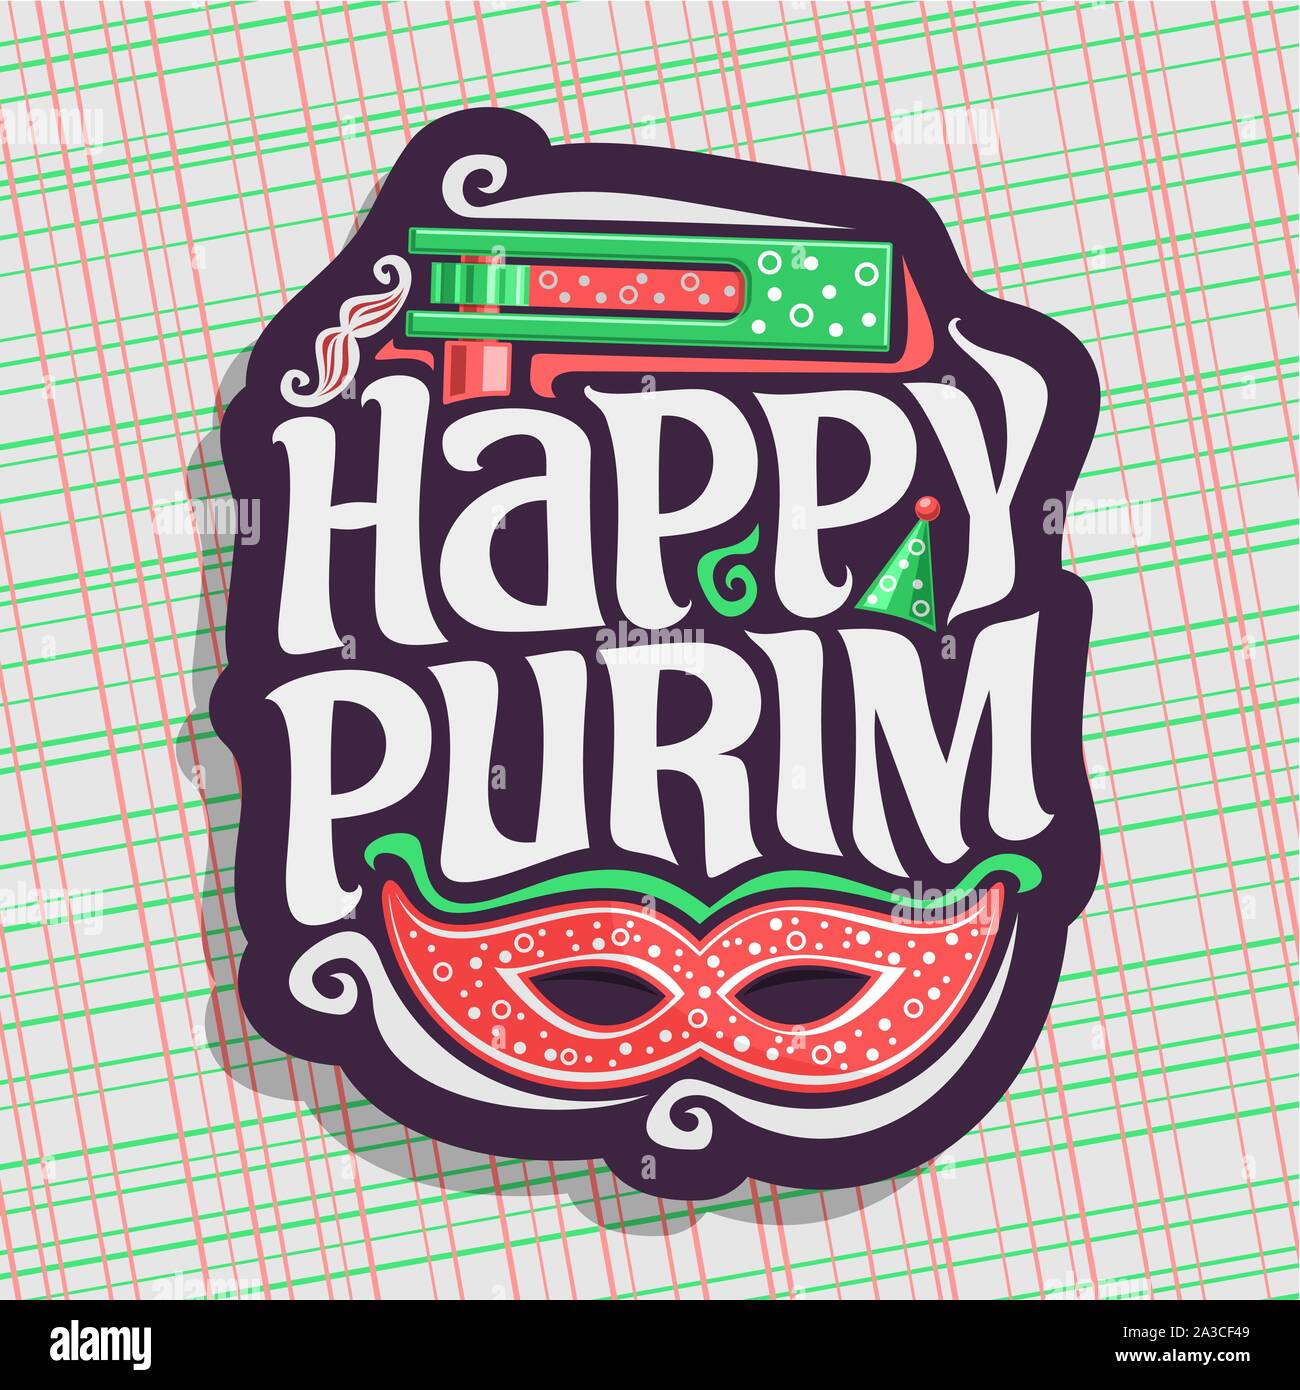 Vektor logo für Happy Purim, Poster mit Karneval Maske und Krachmacher Spielzeug für jüdische Feiertag, ursprüngliche Schriftart für die Begrüßung zitieren happy Purim, masquerad Stock Vektor